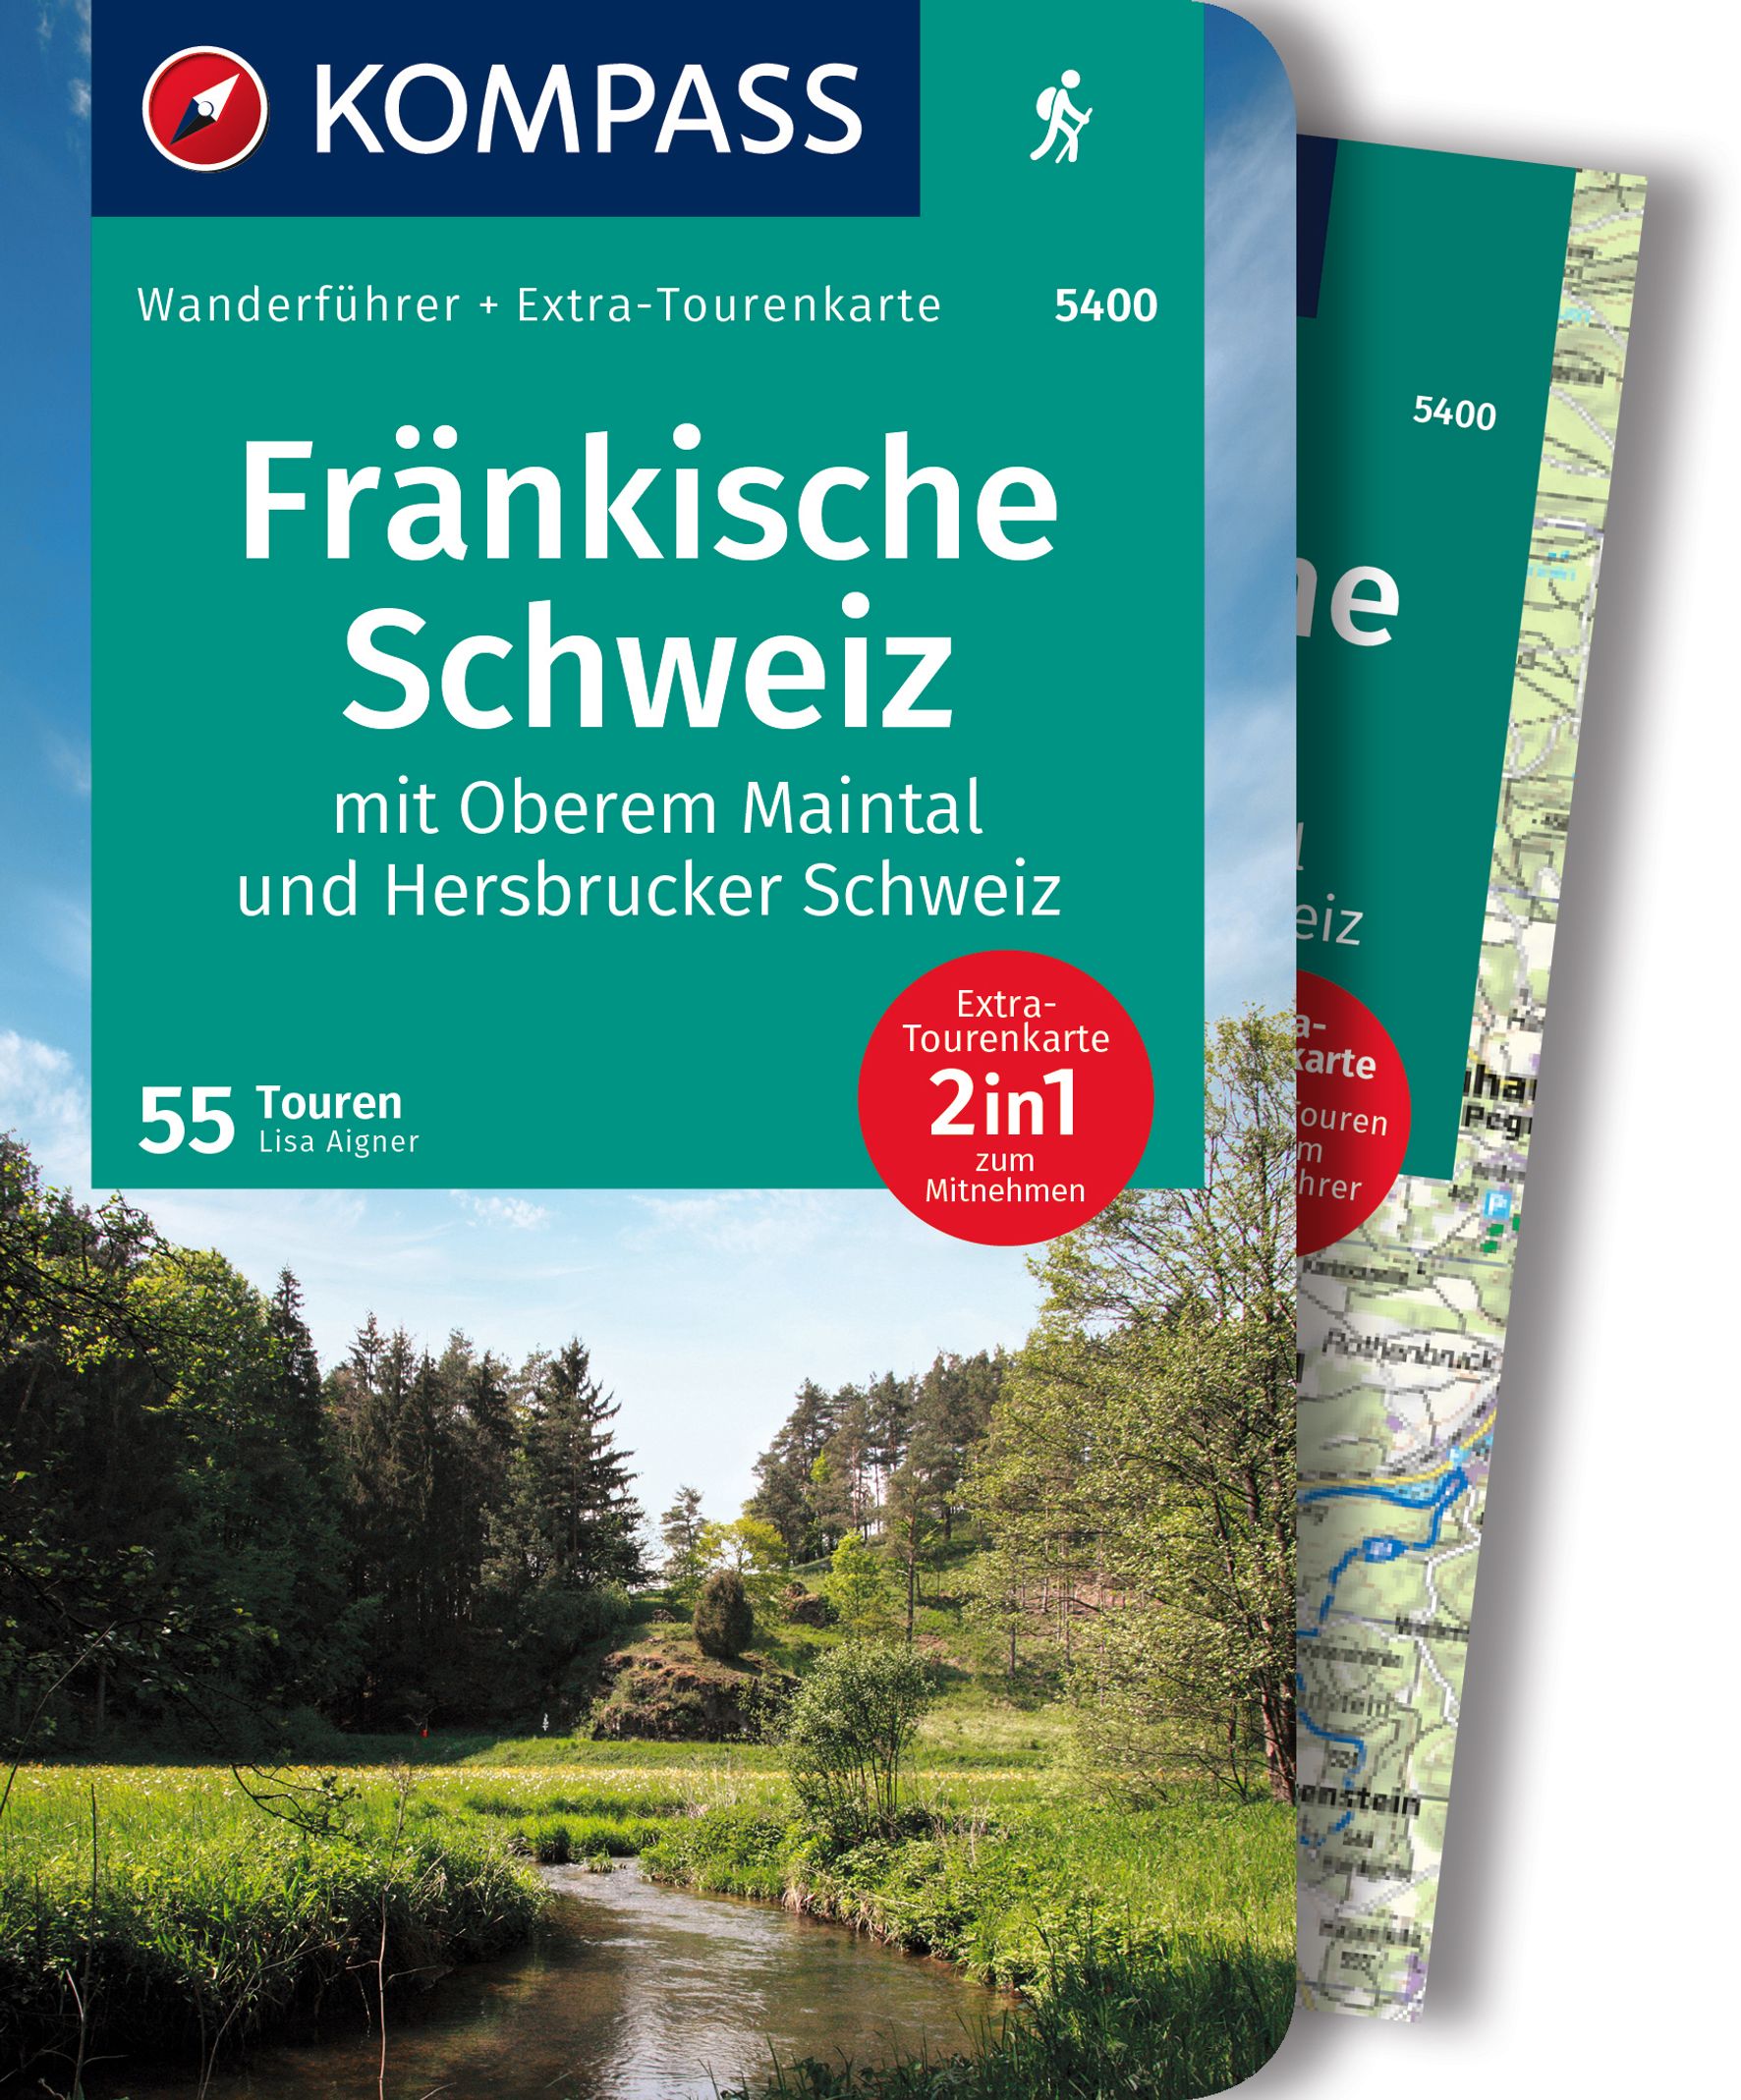 MAIRDUMONT Fränkische Schweiz mit Oberem Maintal und Hersbrucker Schweiz, 55 Touren mit Extra-Tourenkarte